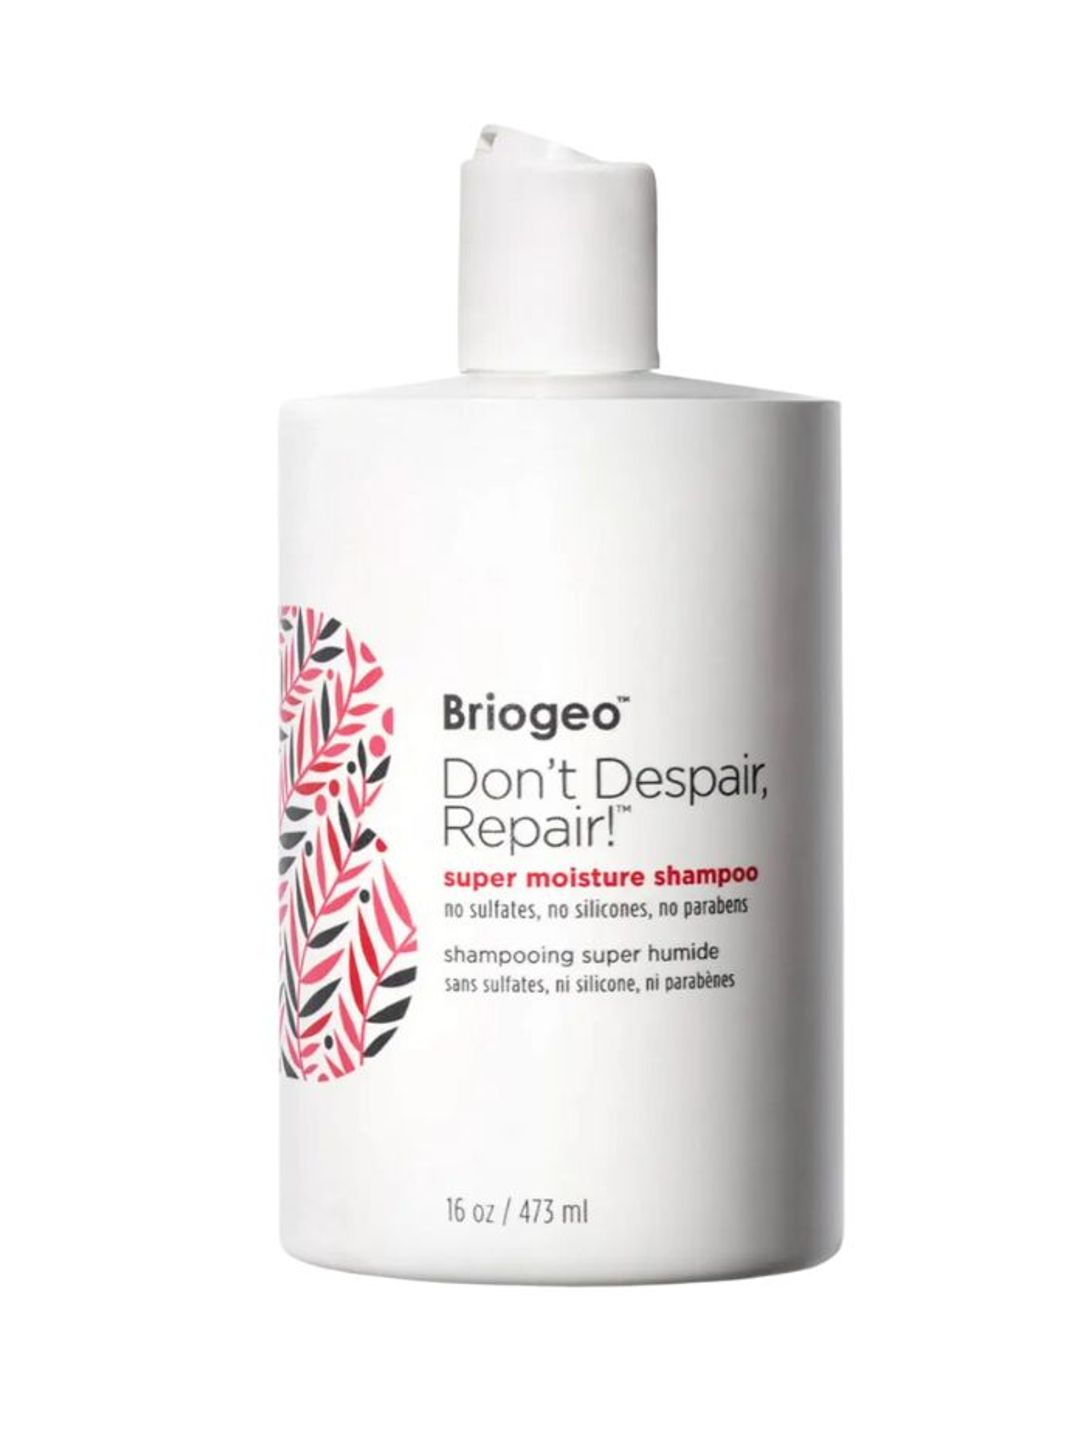 Don’t Despair, Repair! Super Moisture Shampoo - Briogeo